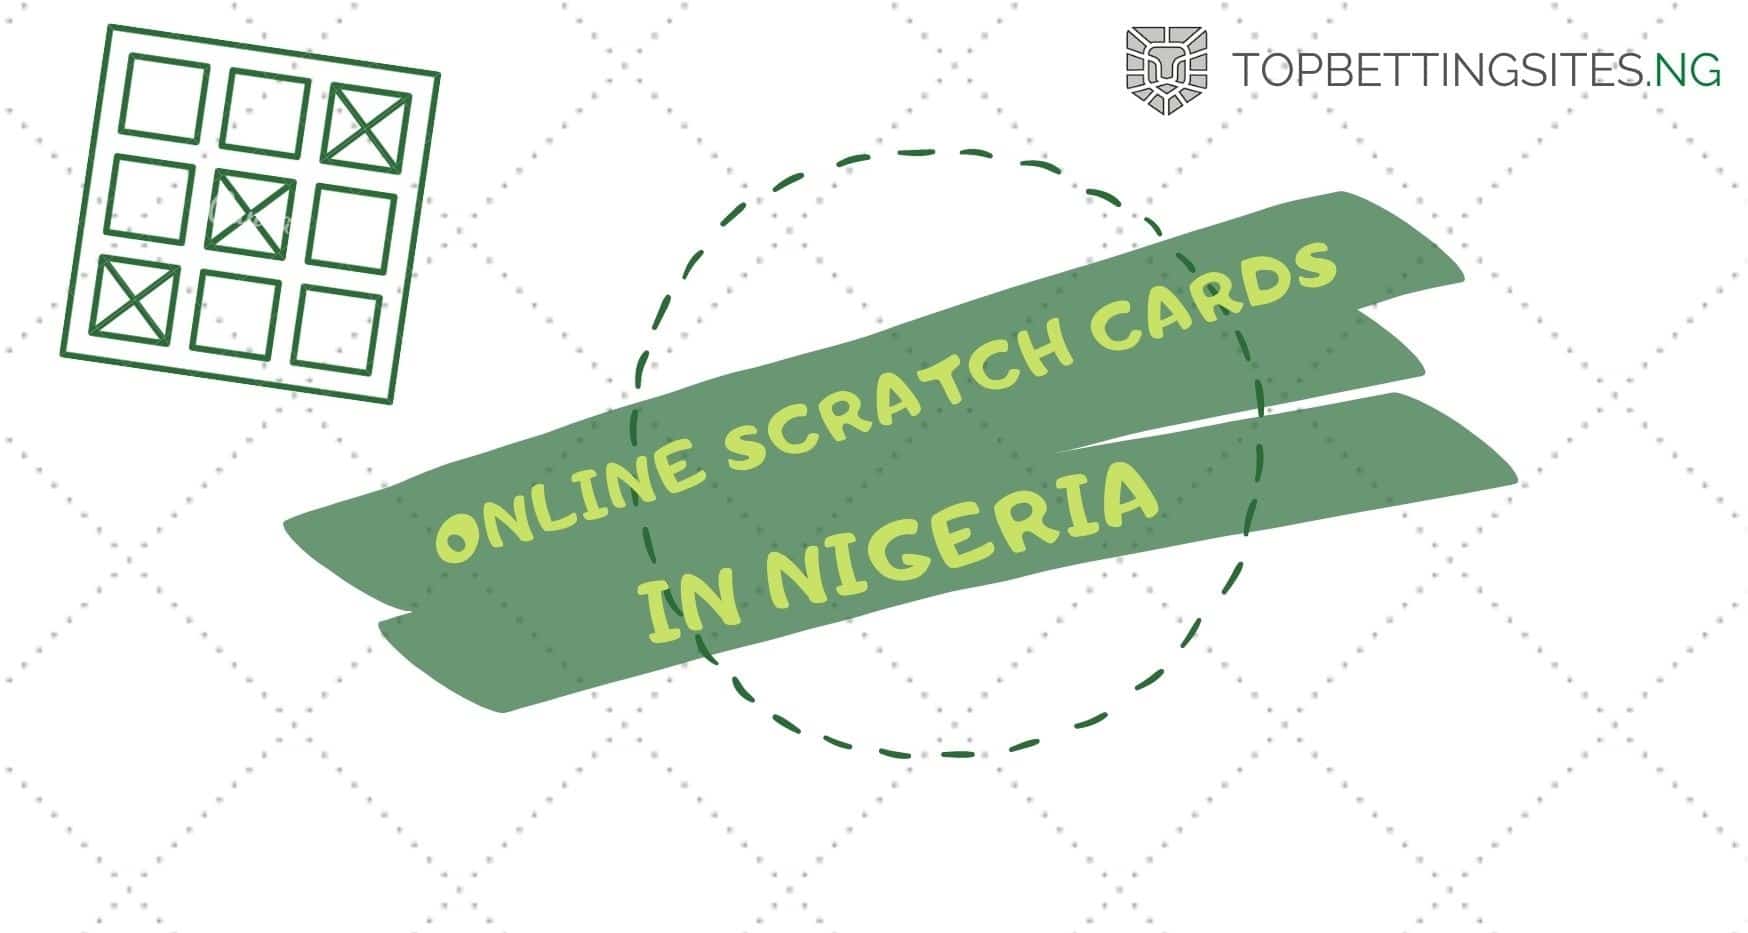 Online Scratchies in Nigeria